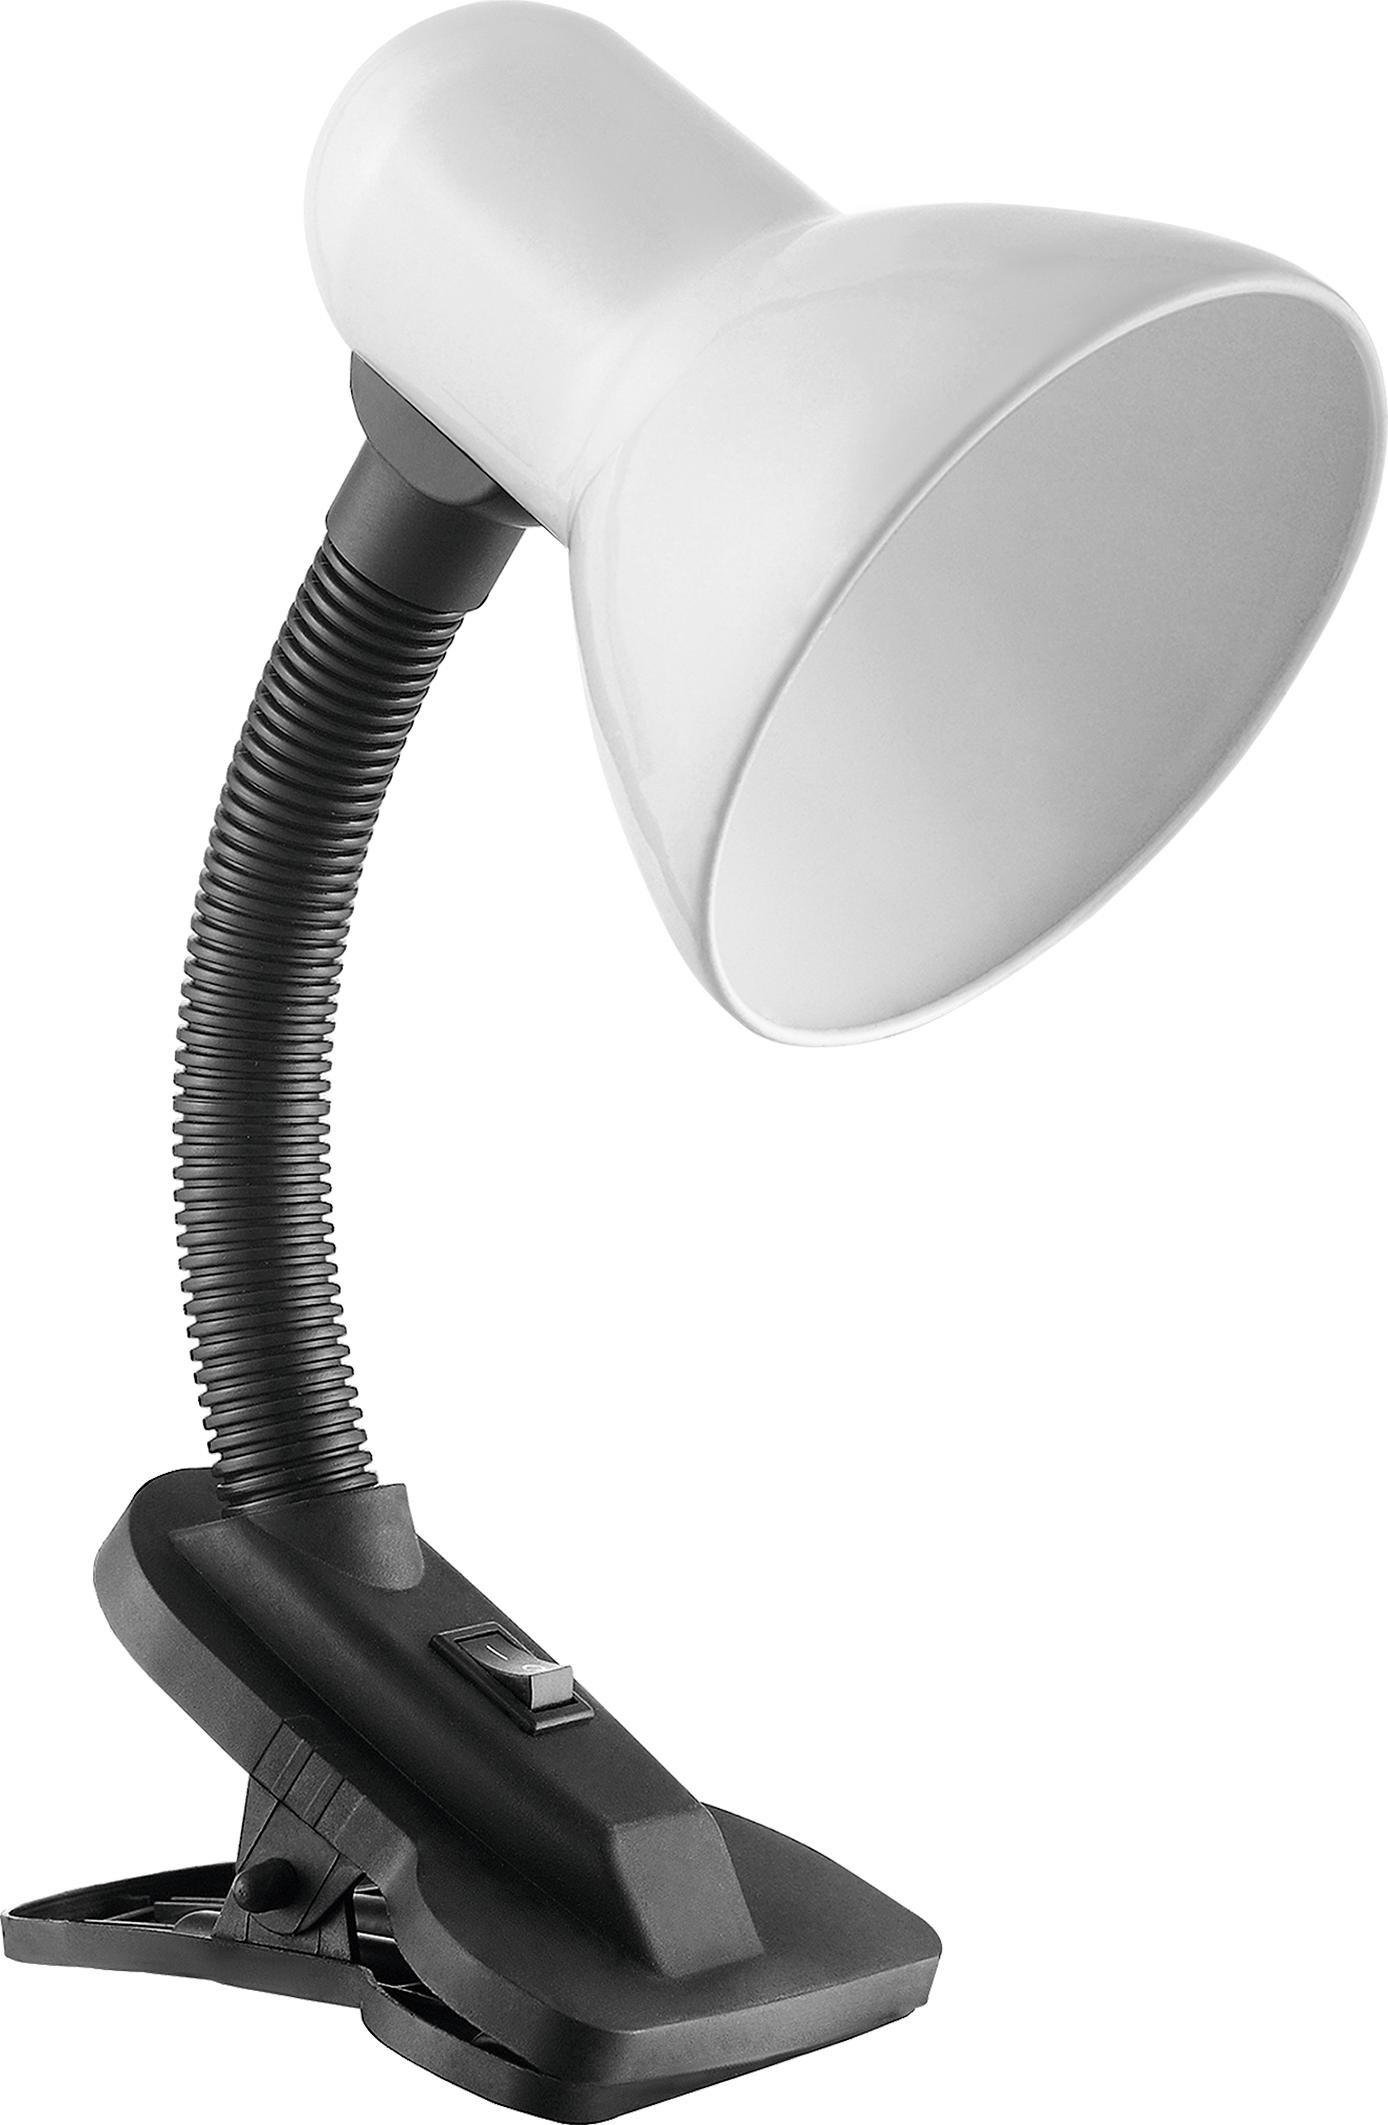 Lampa de birou VIRONE LATSA DL-3/W, E27, 40 W, IP20, brat flexibil cu clema, cablu 1 m, negru/alb